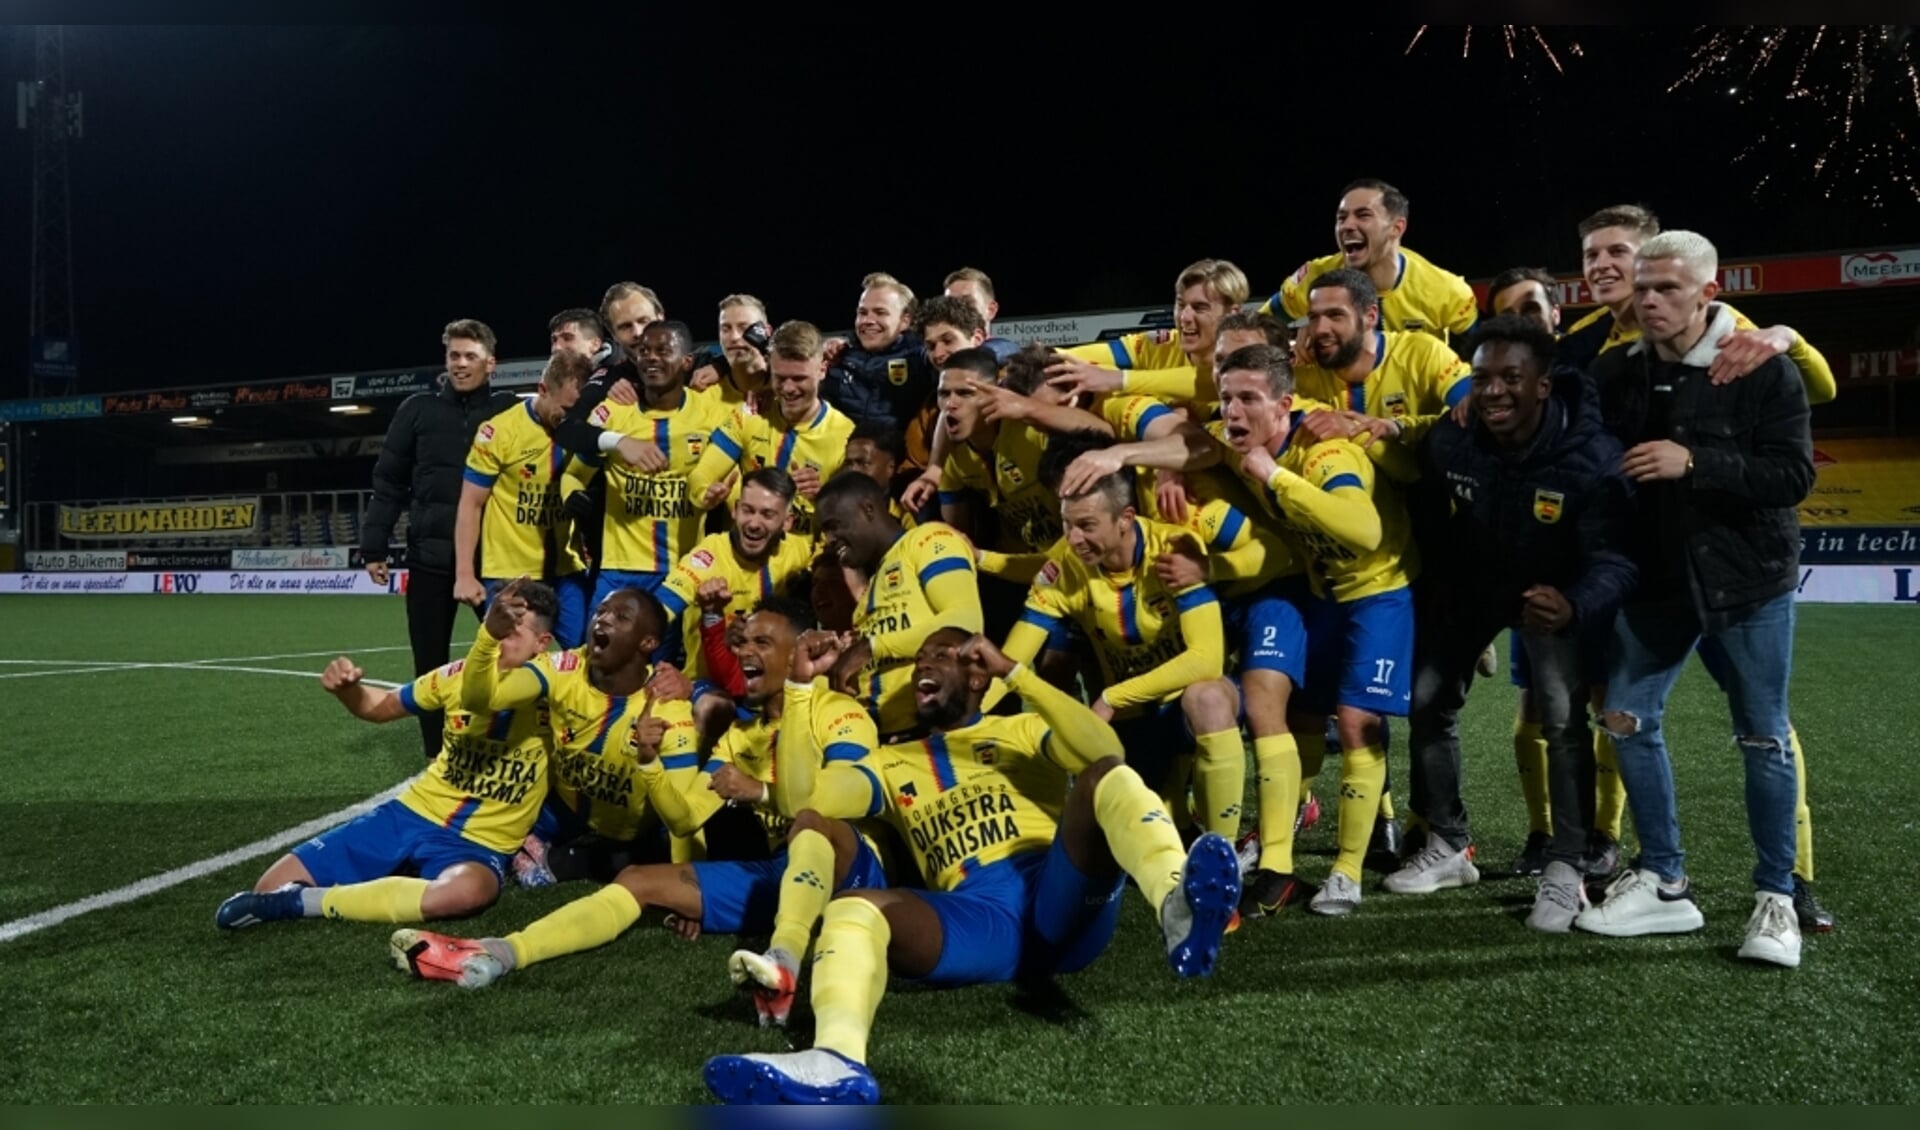 Kampioen Cambuur wint ook nog eens de vierde periodetitel: de derde periodetitel voor de Leeuwarders dit ongelooflijke seizoen.